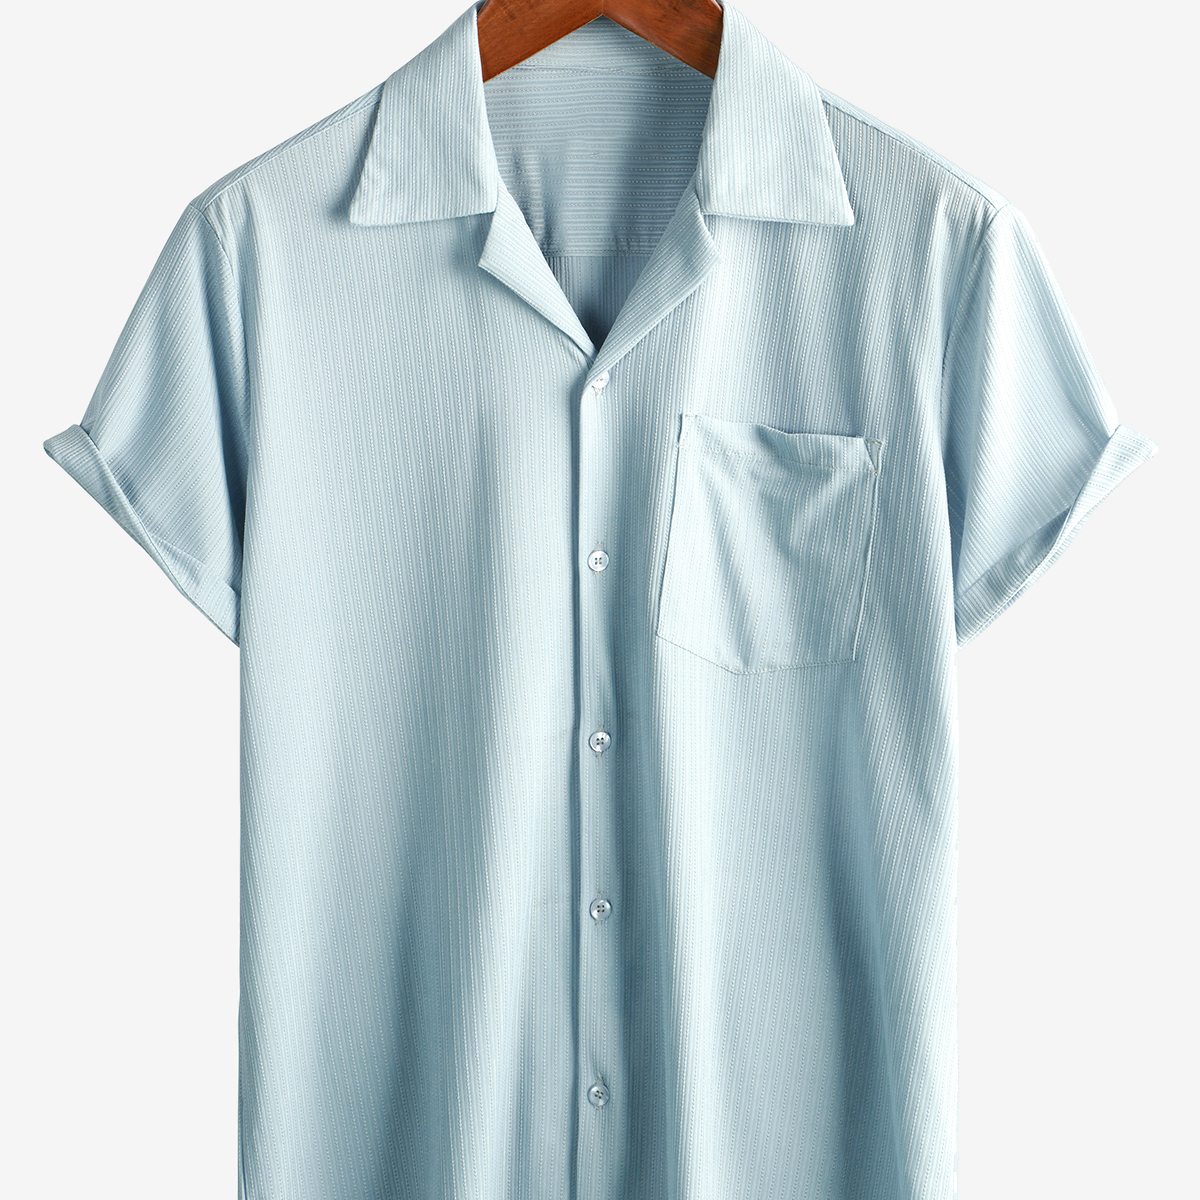 Men's Button Up Summer Short Sleeve Pocket Textured Beach Shirt